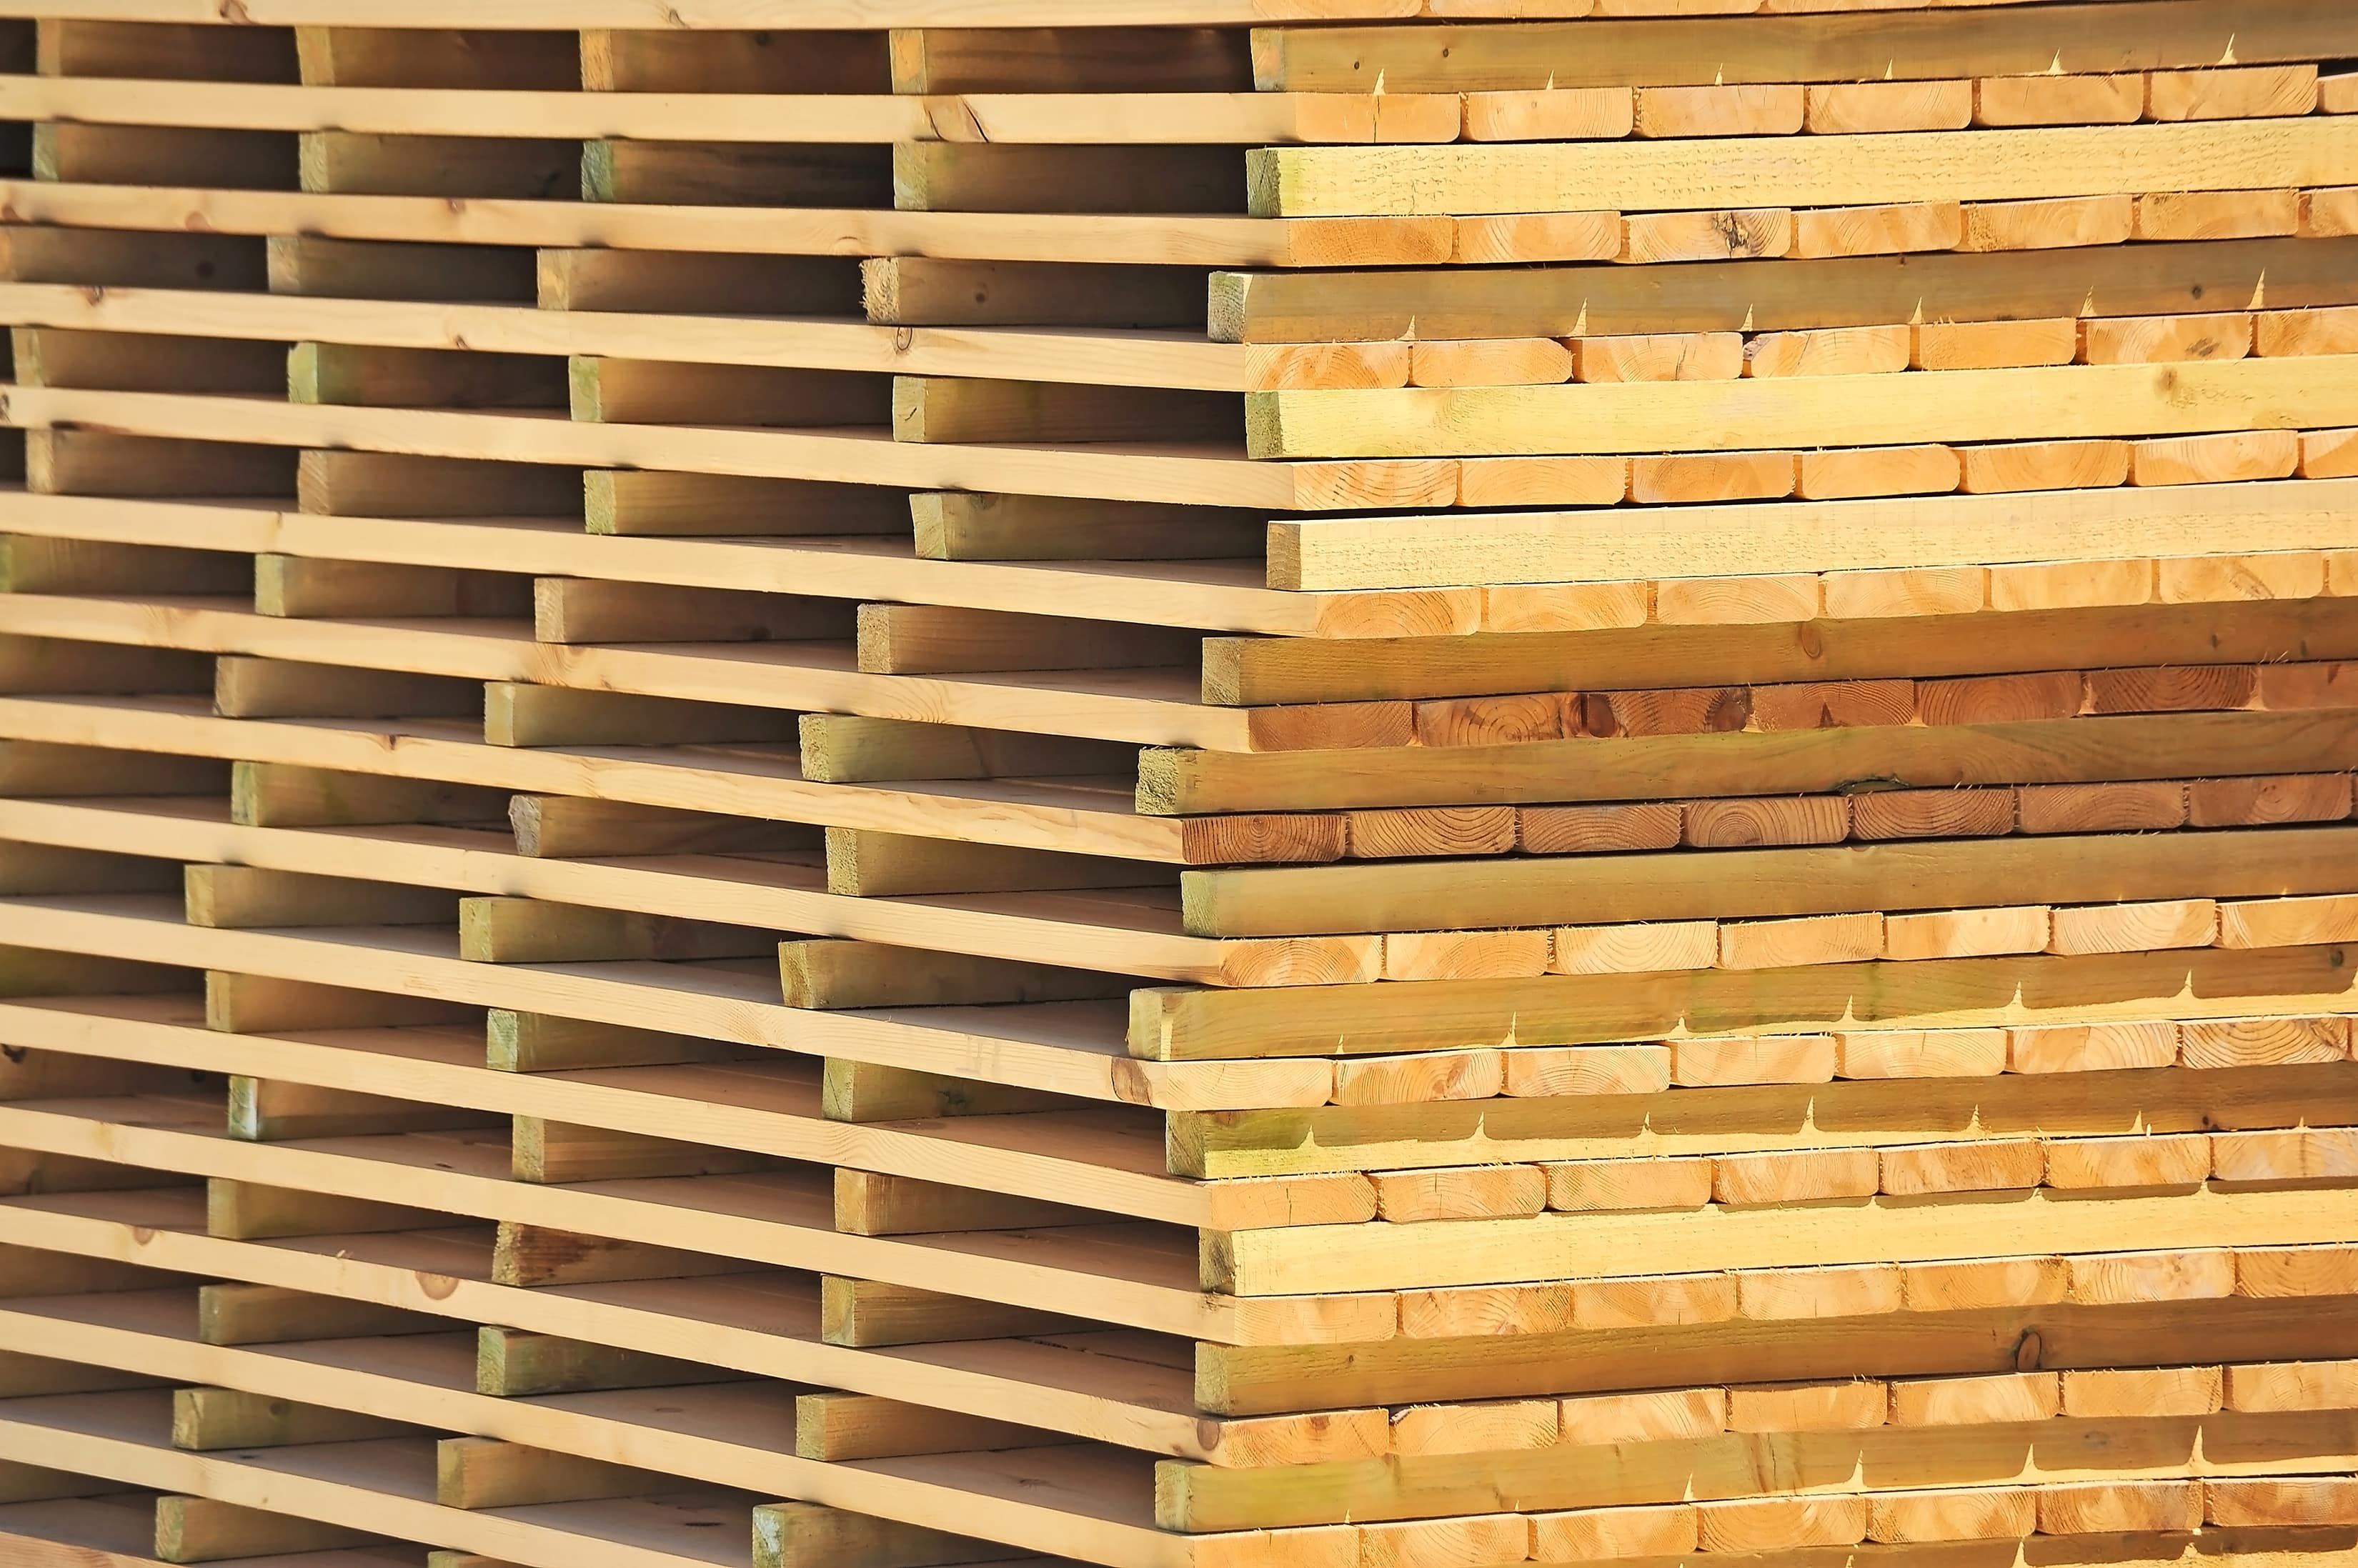 Планируем начать торговлю сушеной древесиной, а также предоставлять услуги по сушке древесины